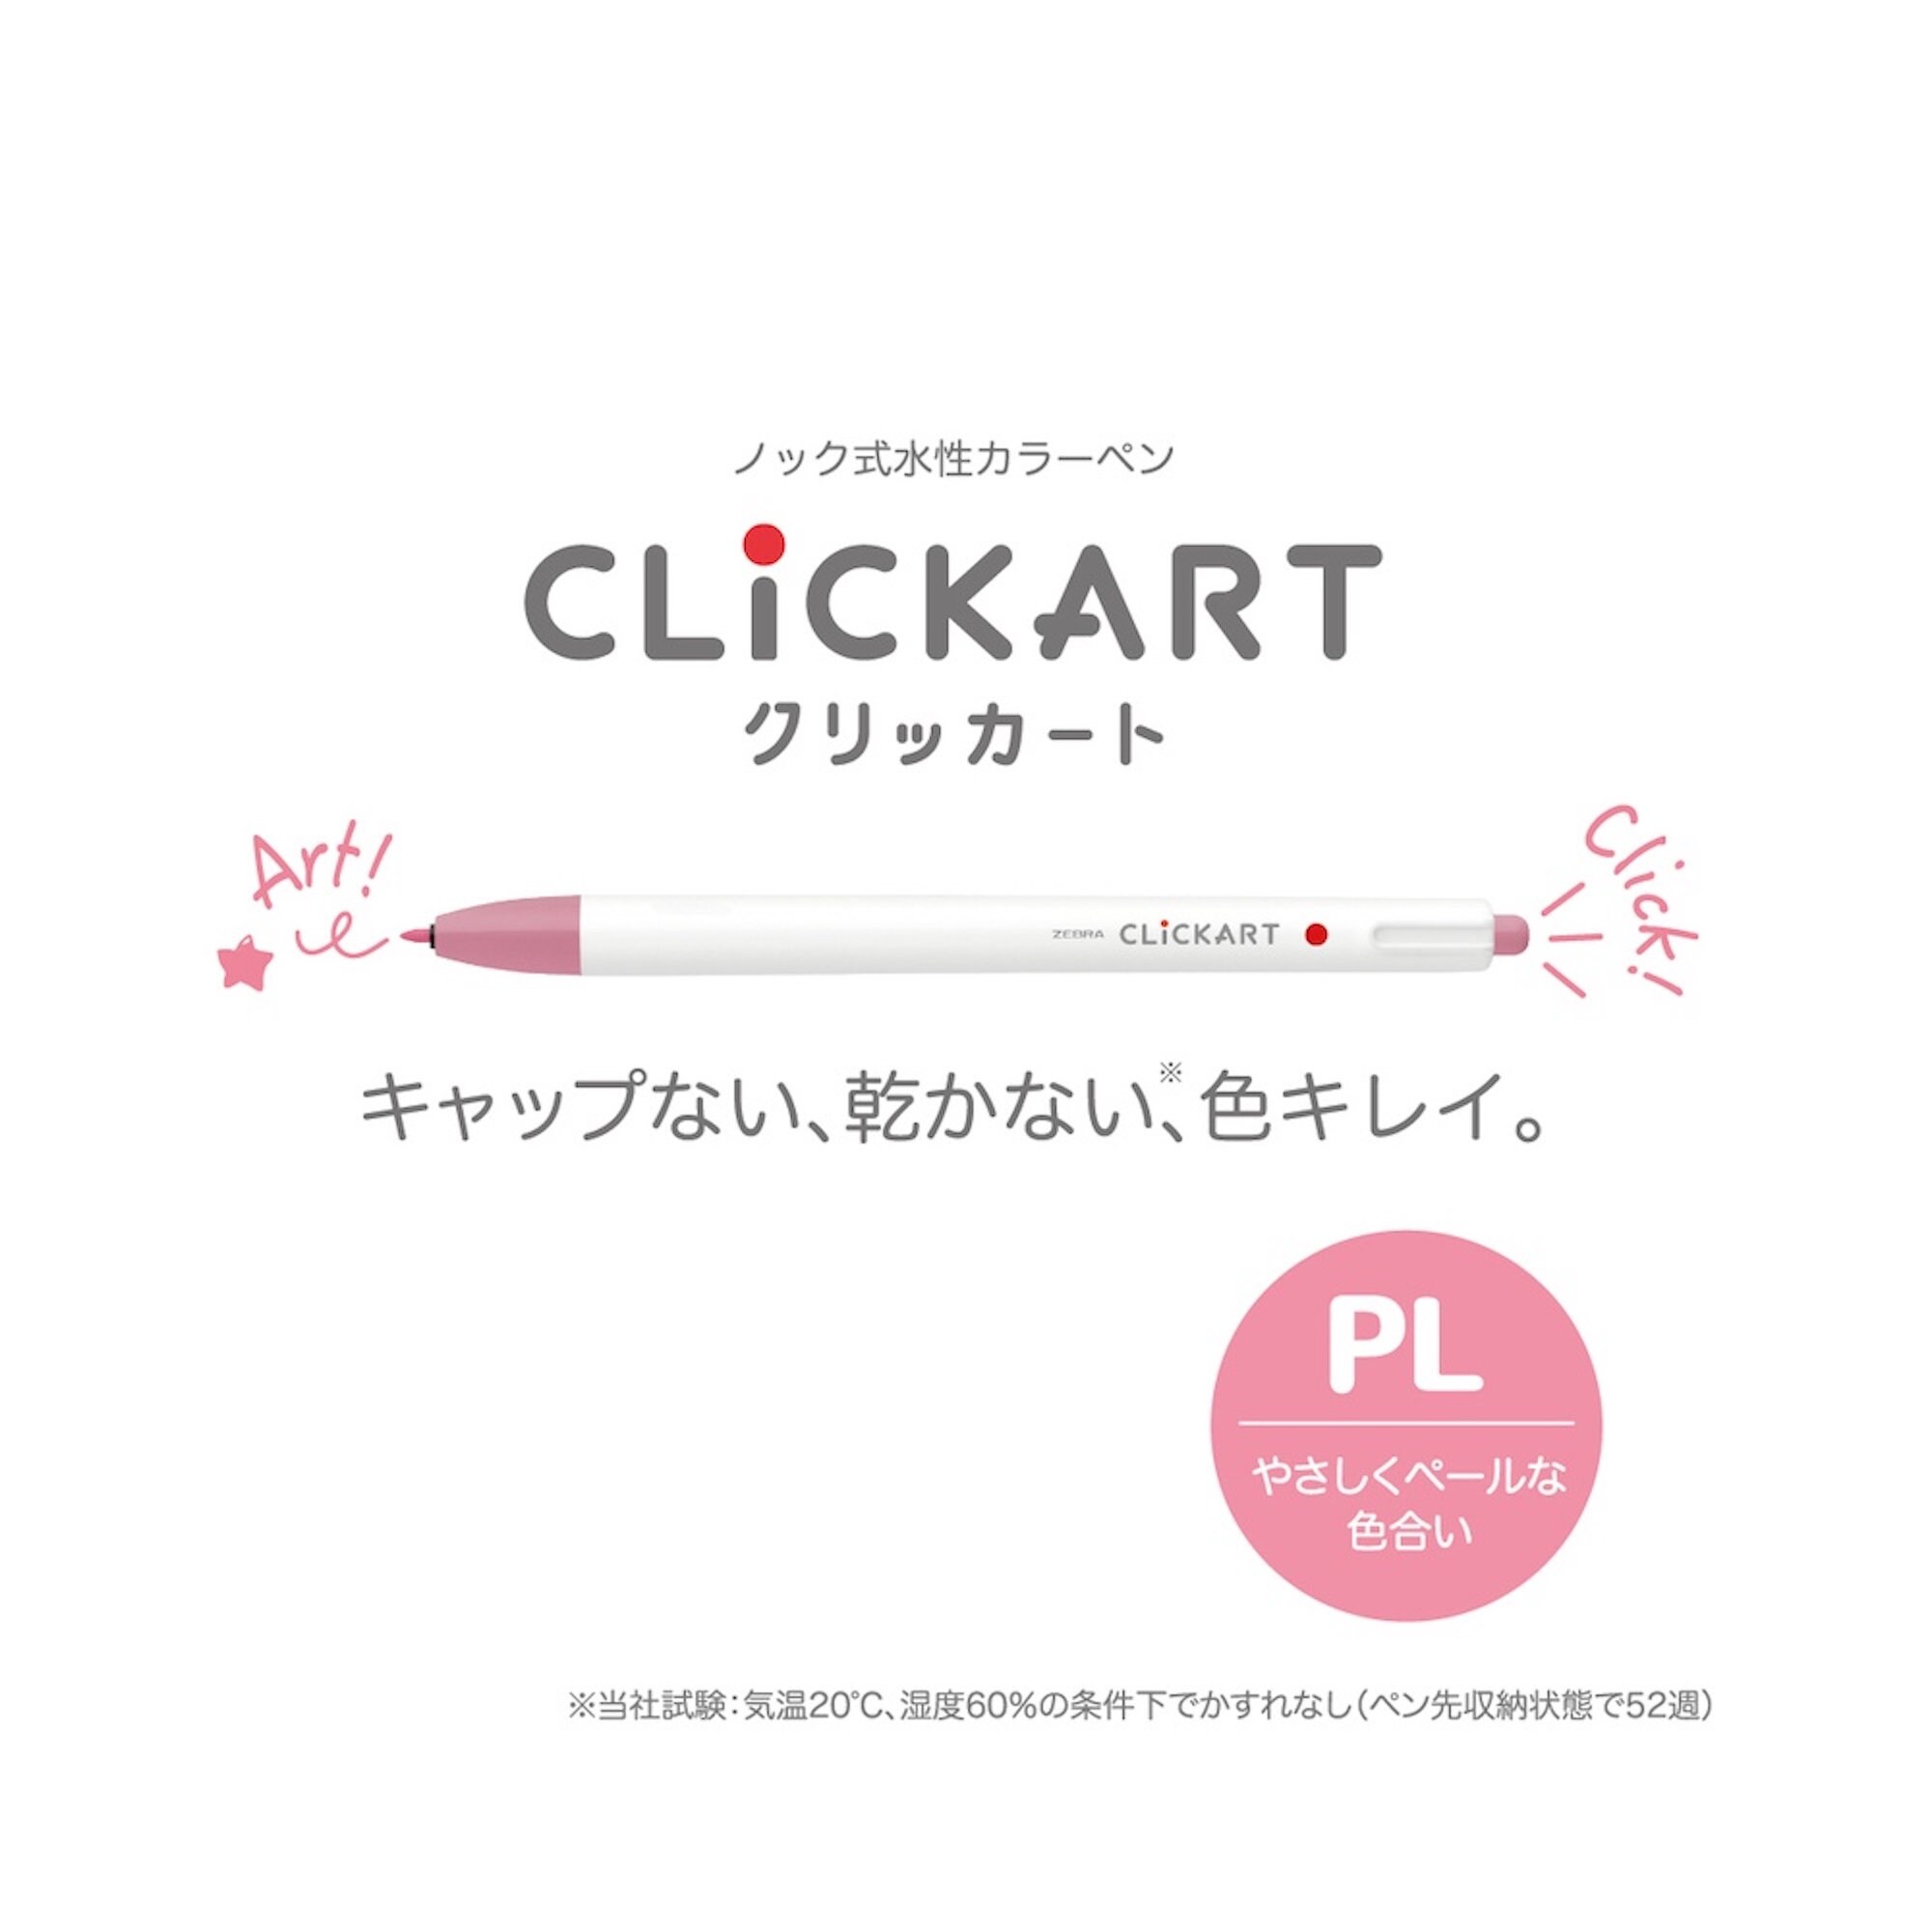 Zebra Clickart Retractable Marker Pen Baby Red